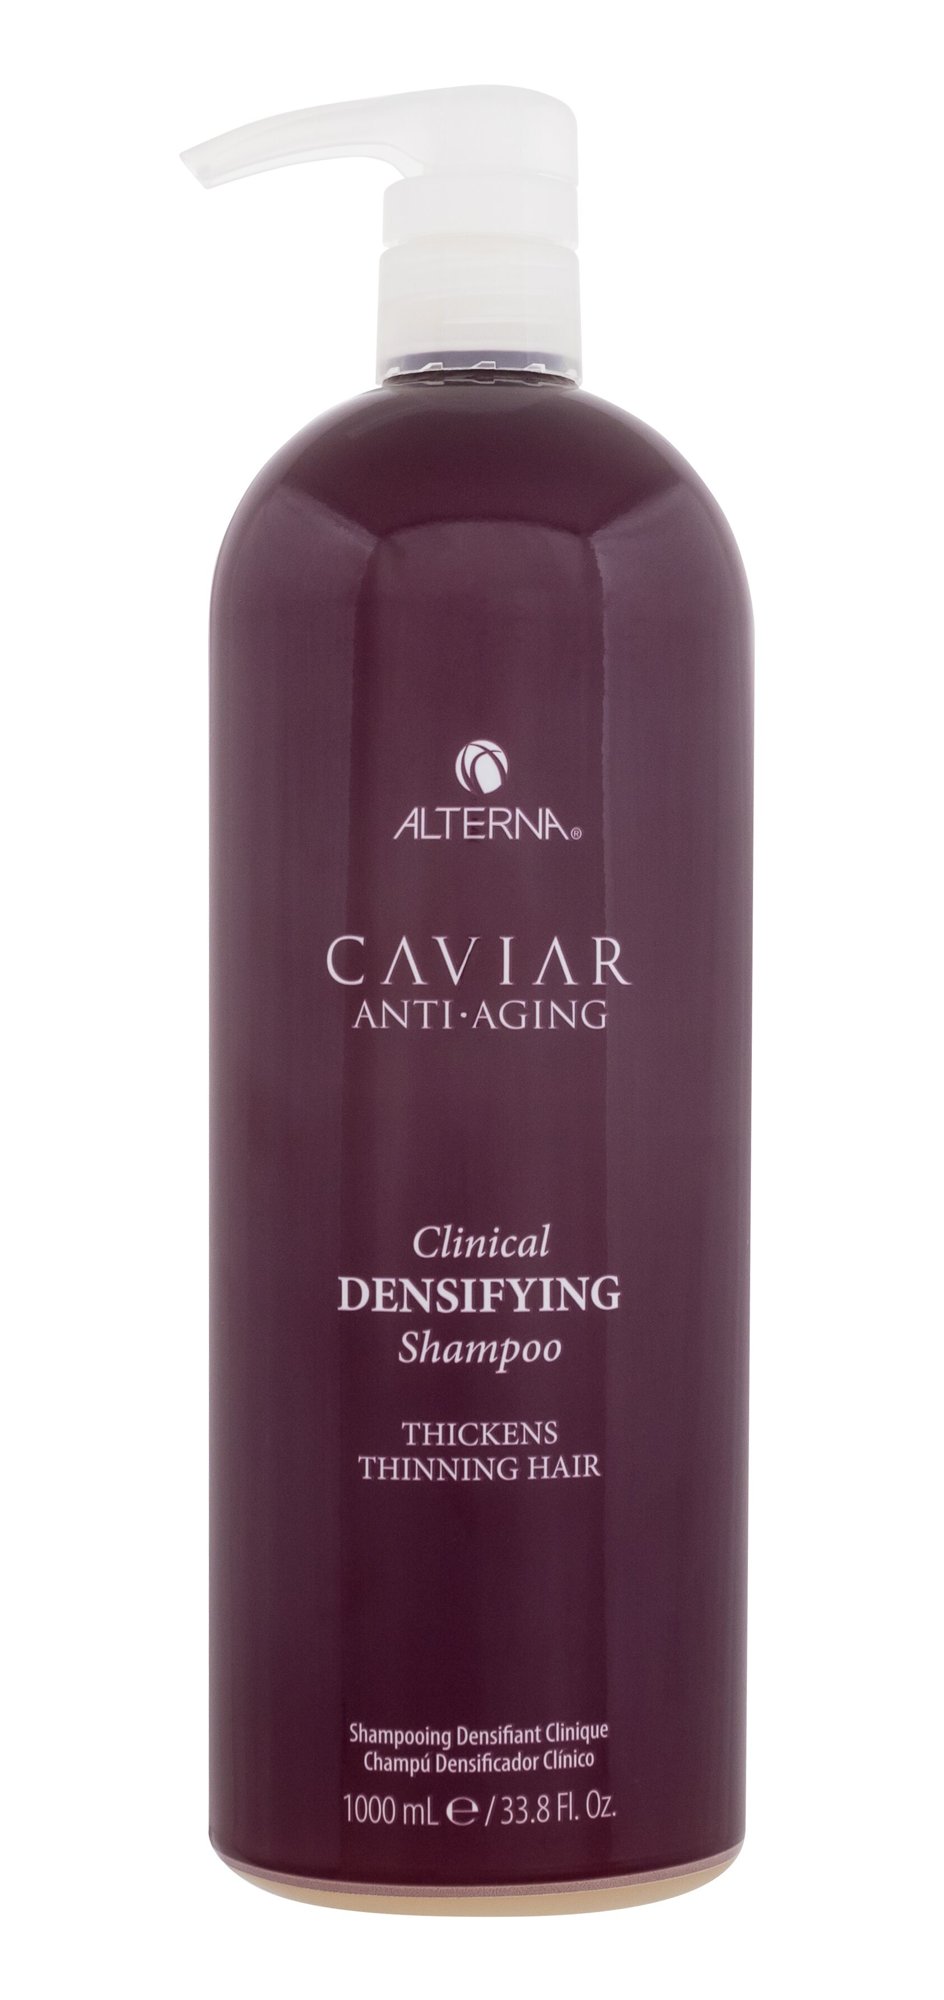 Alterna Caviar Anti-Aging Clinical Densifying Shampoo šampūnas